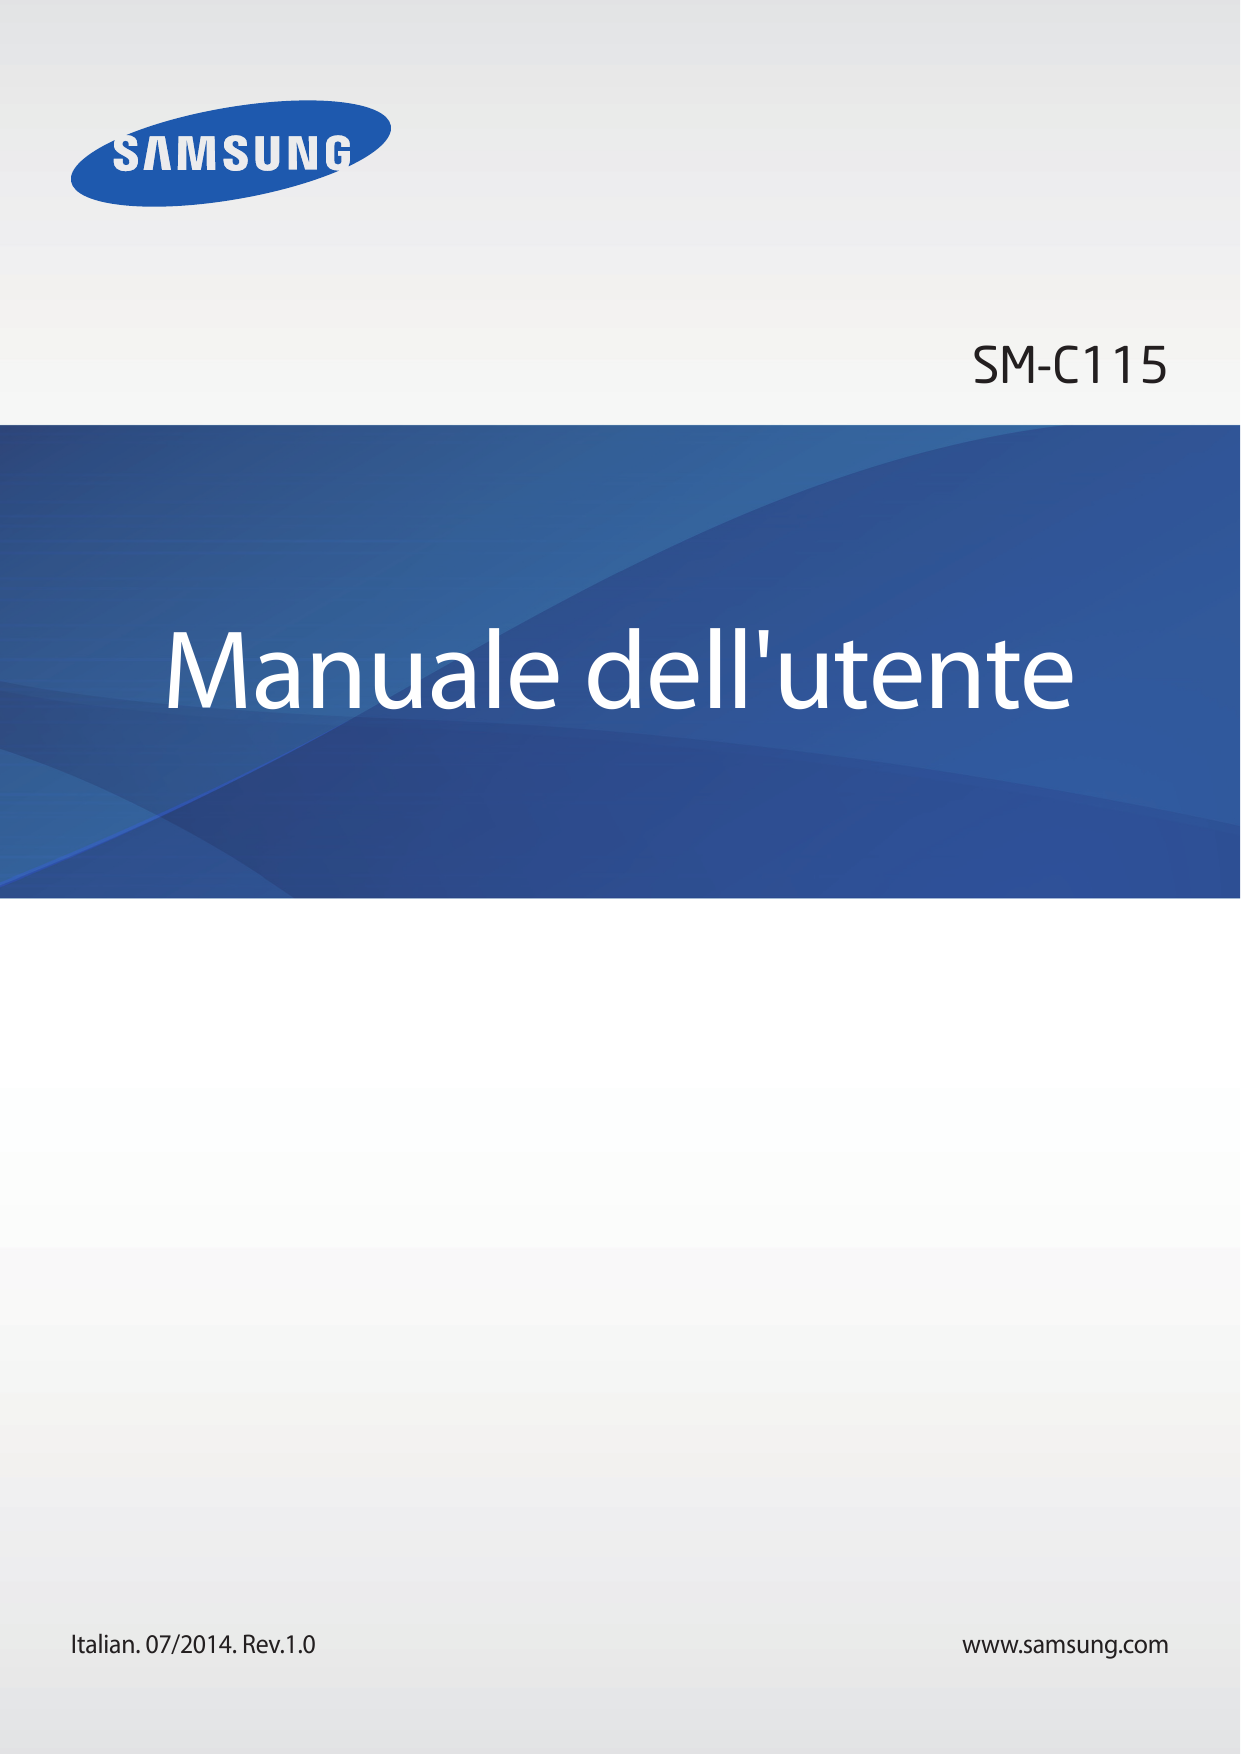 SM-C115Manuale dell'utenteItalian. 07/2014. Rev.1.0www.samsung.com